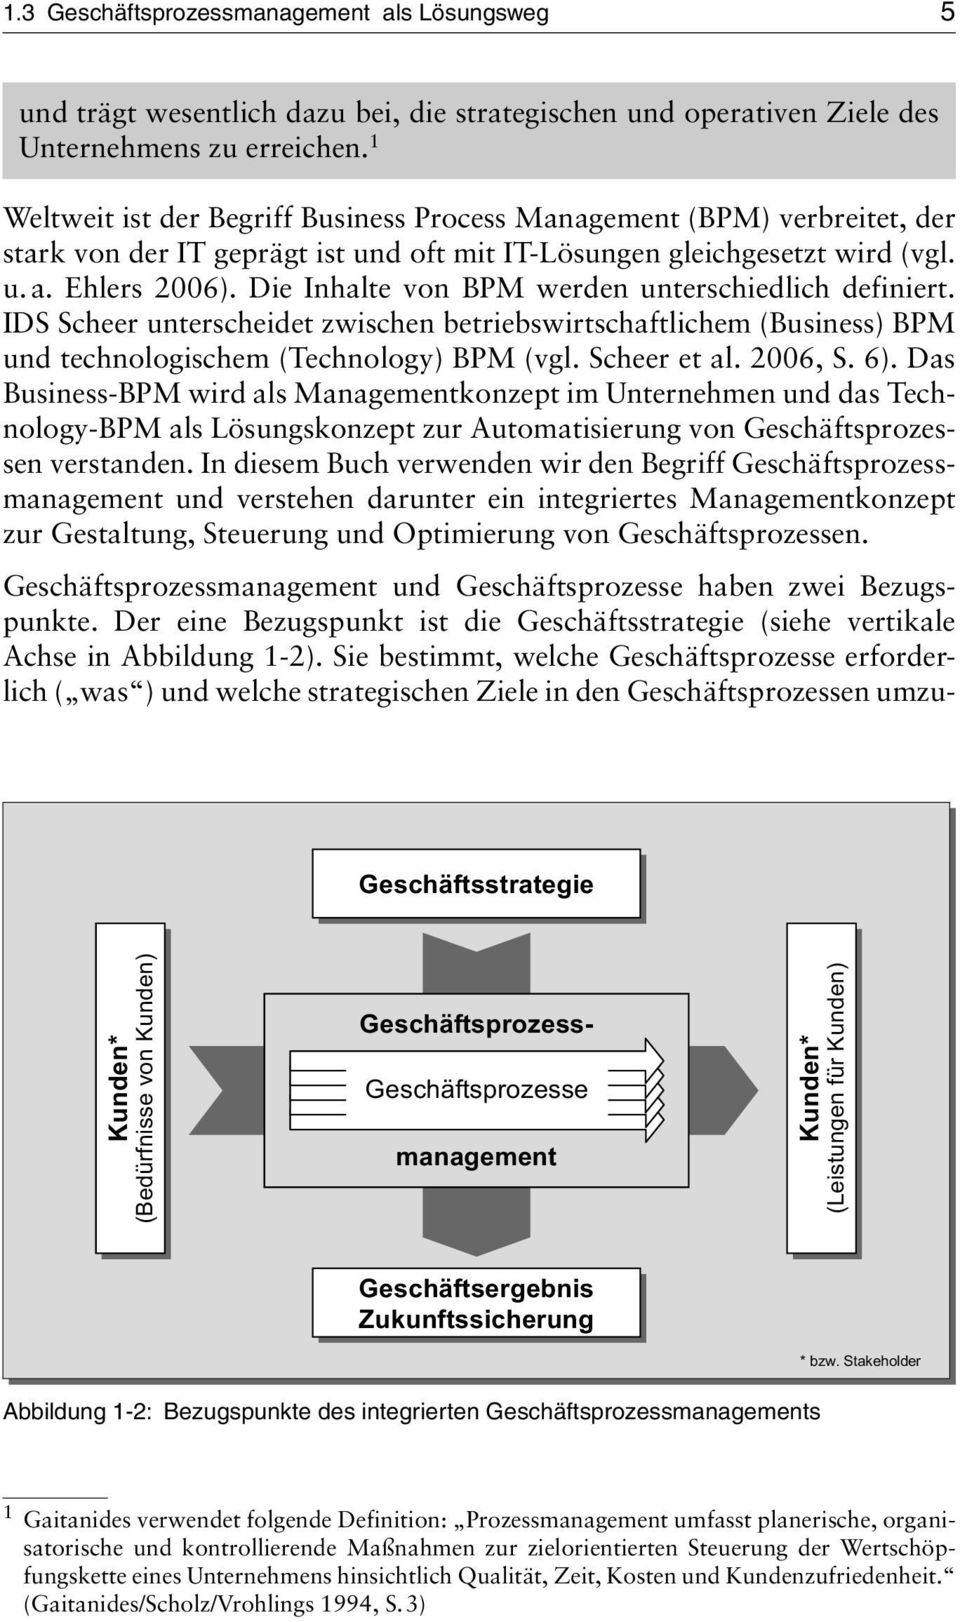 Die Inhalte von BPM werden unterschiedlich definiert. IDS Scheer unterscheidet zwischen betriebswirtschaftlichem (Business) BPM und technologischem (Technology) BPM (vgl. Scheer et al. 2006, S. 6).